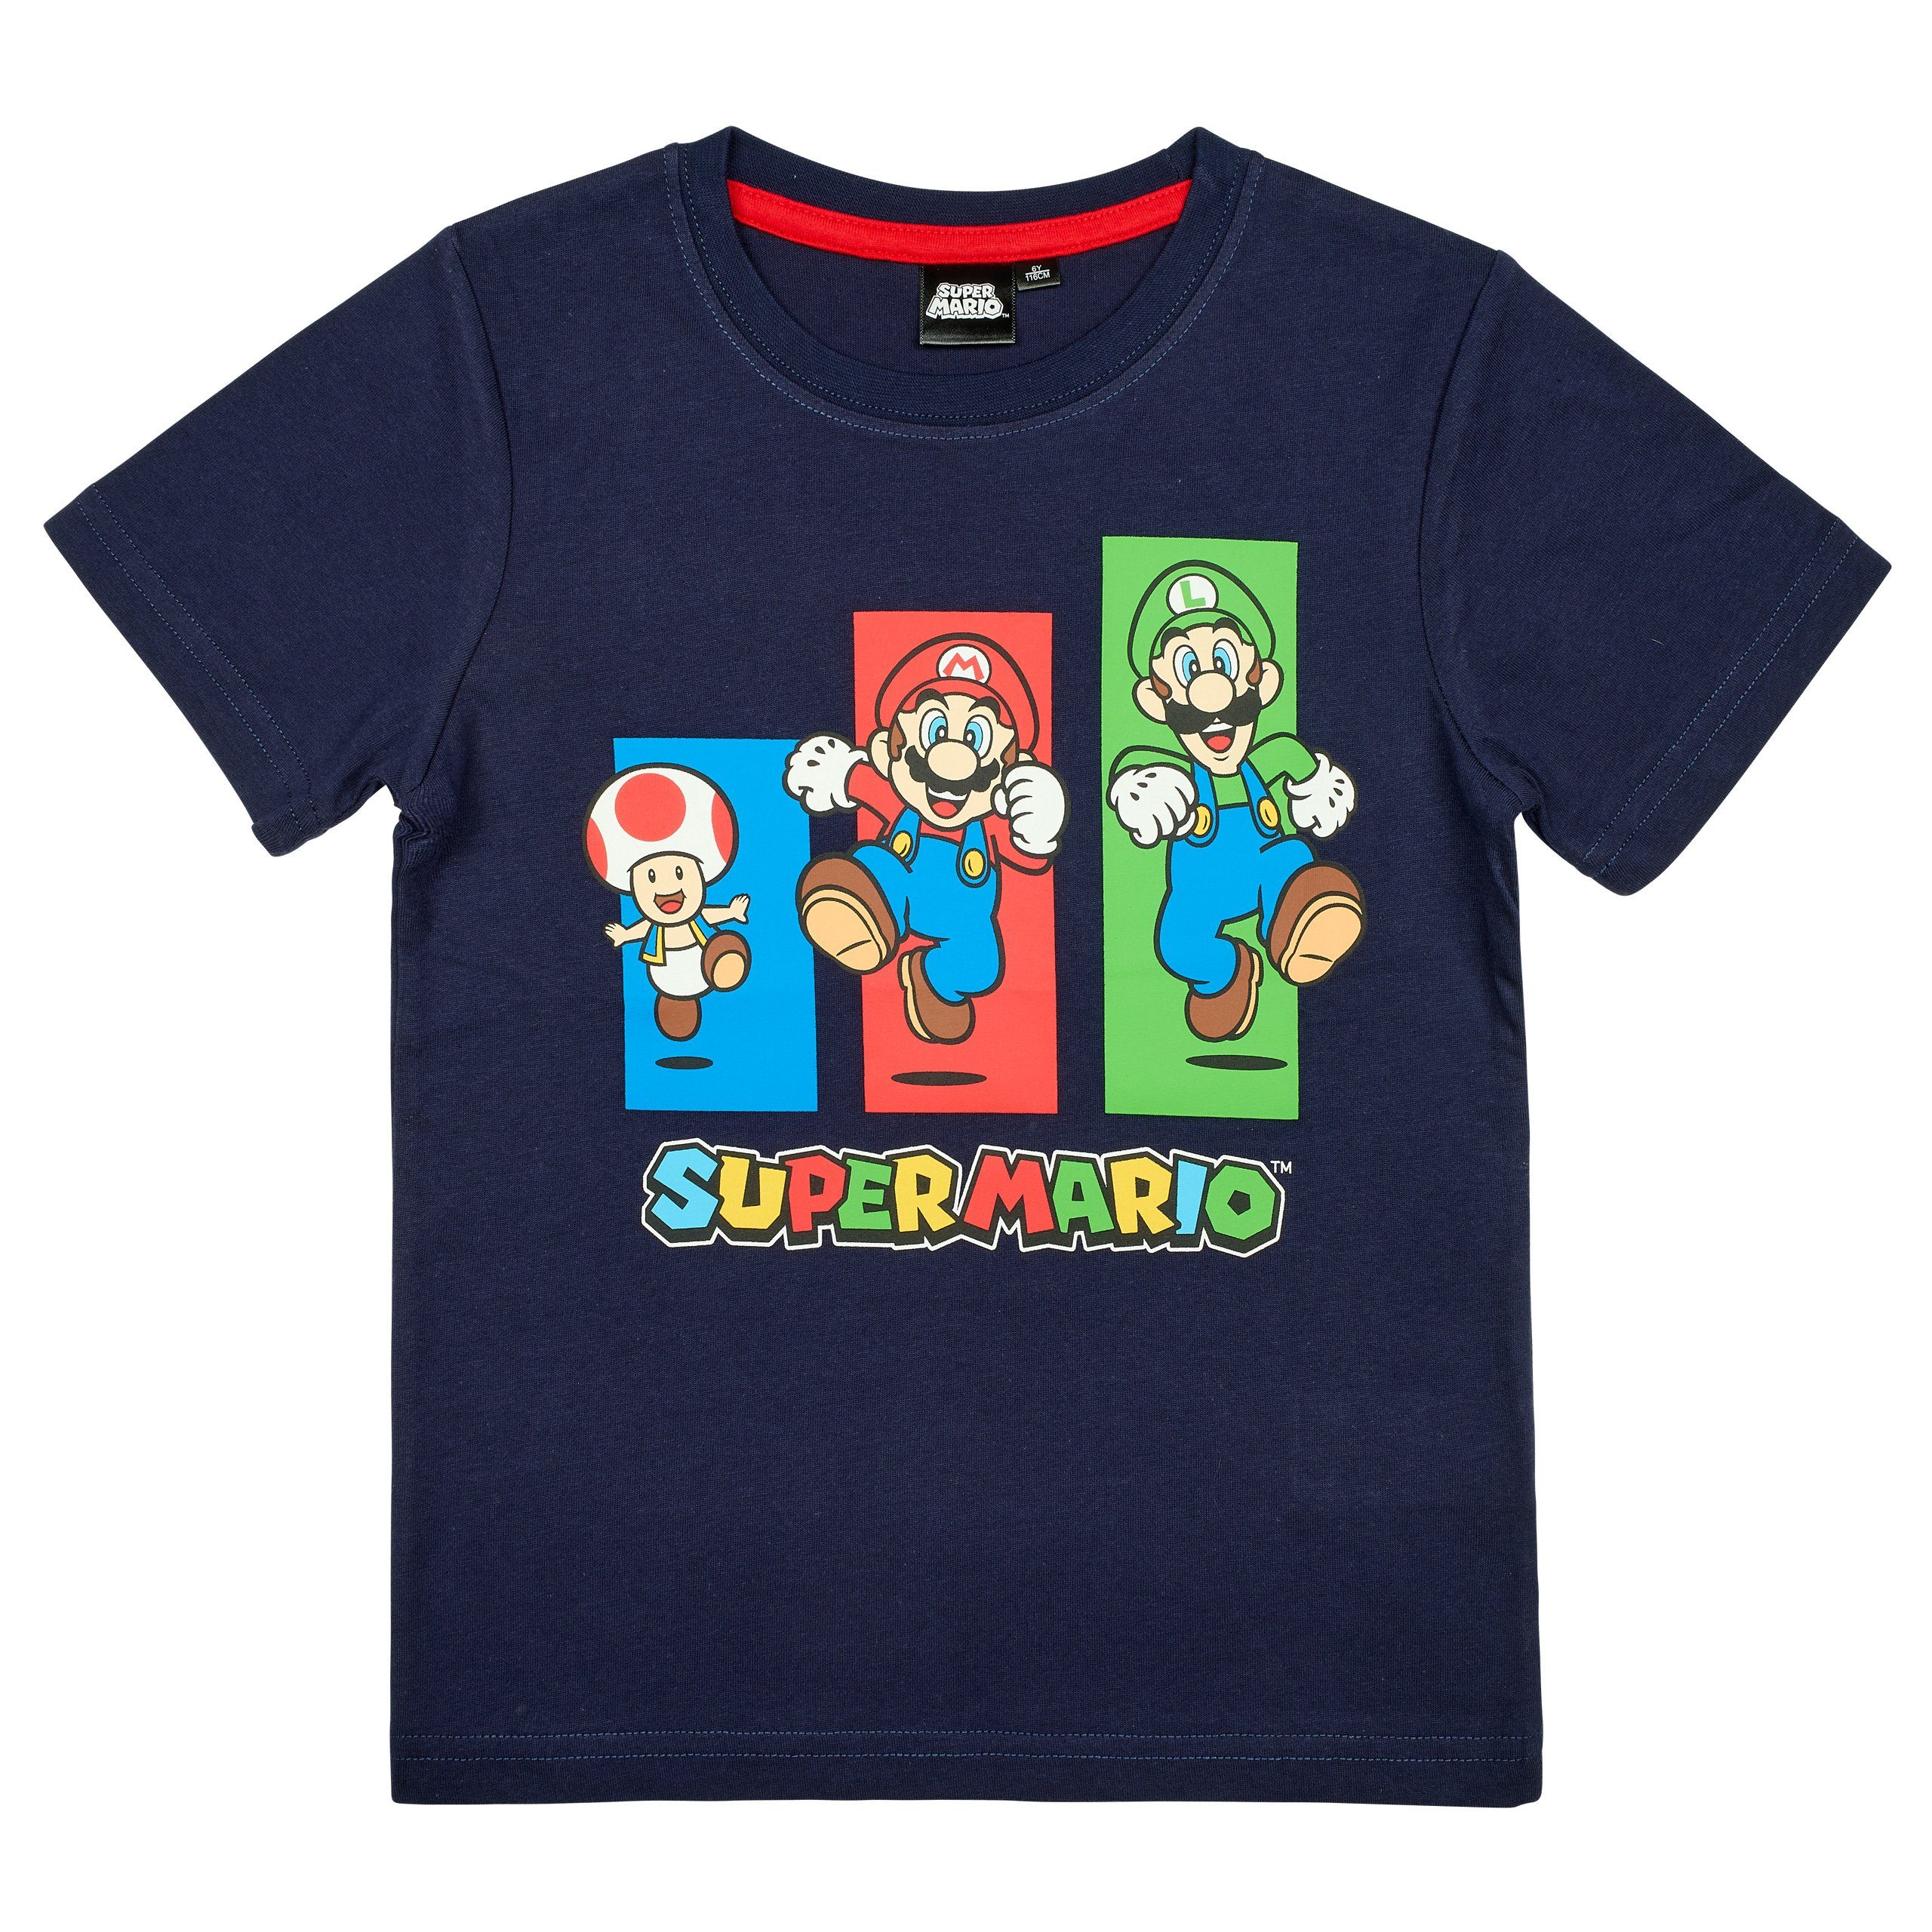 Super Mario T-Shirt Super Mario T-Shirt